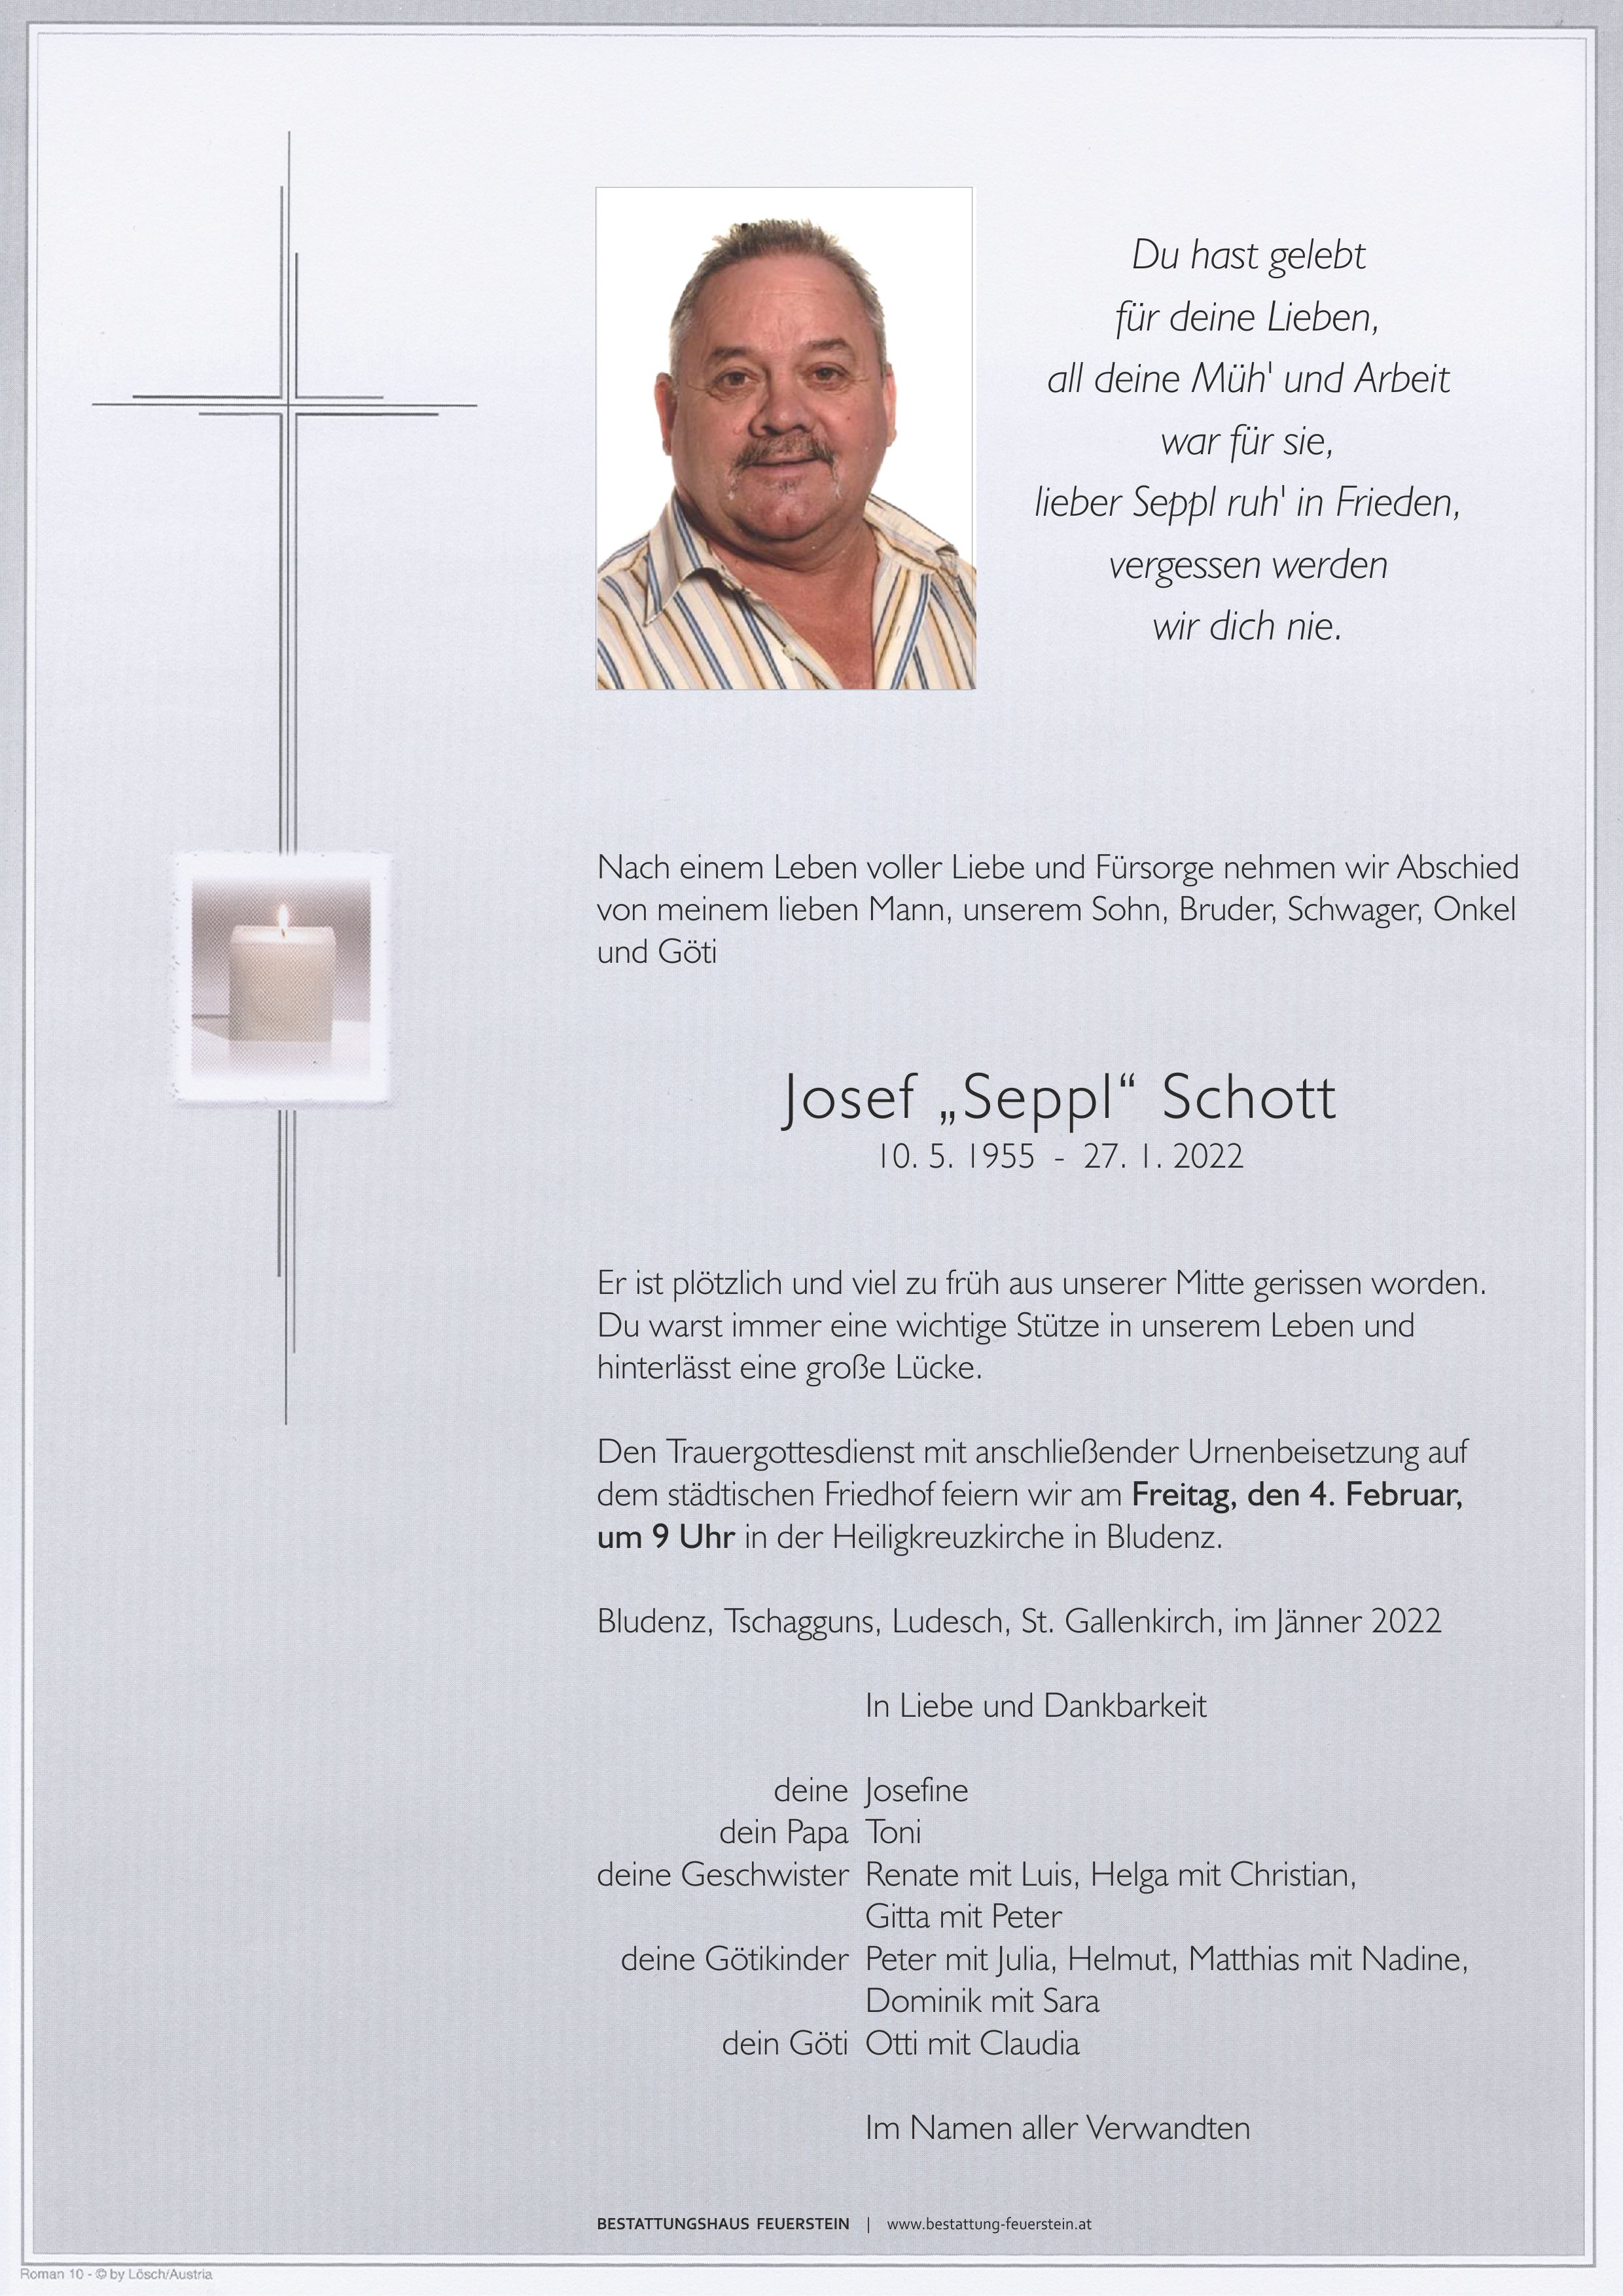 Josef Schott